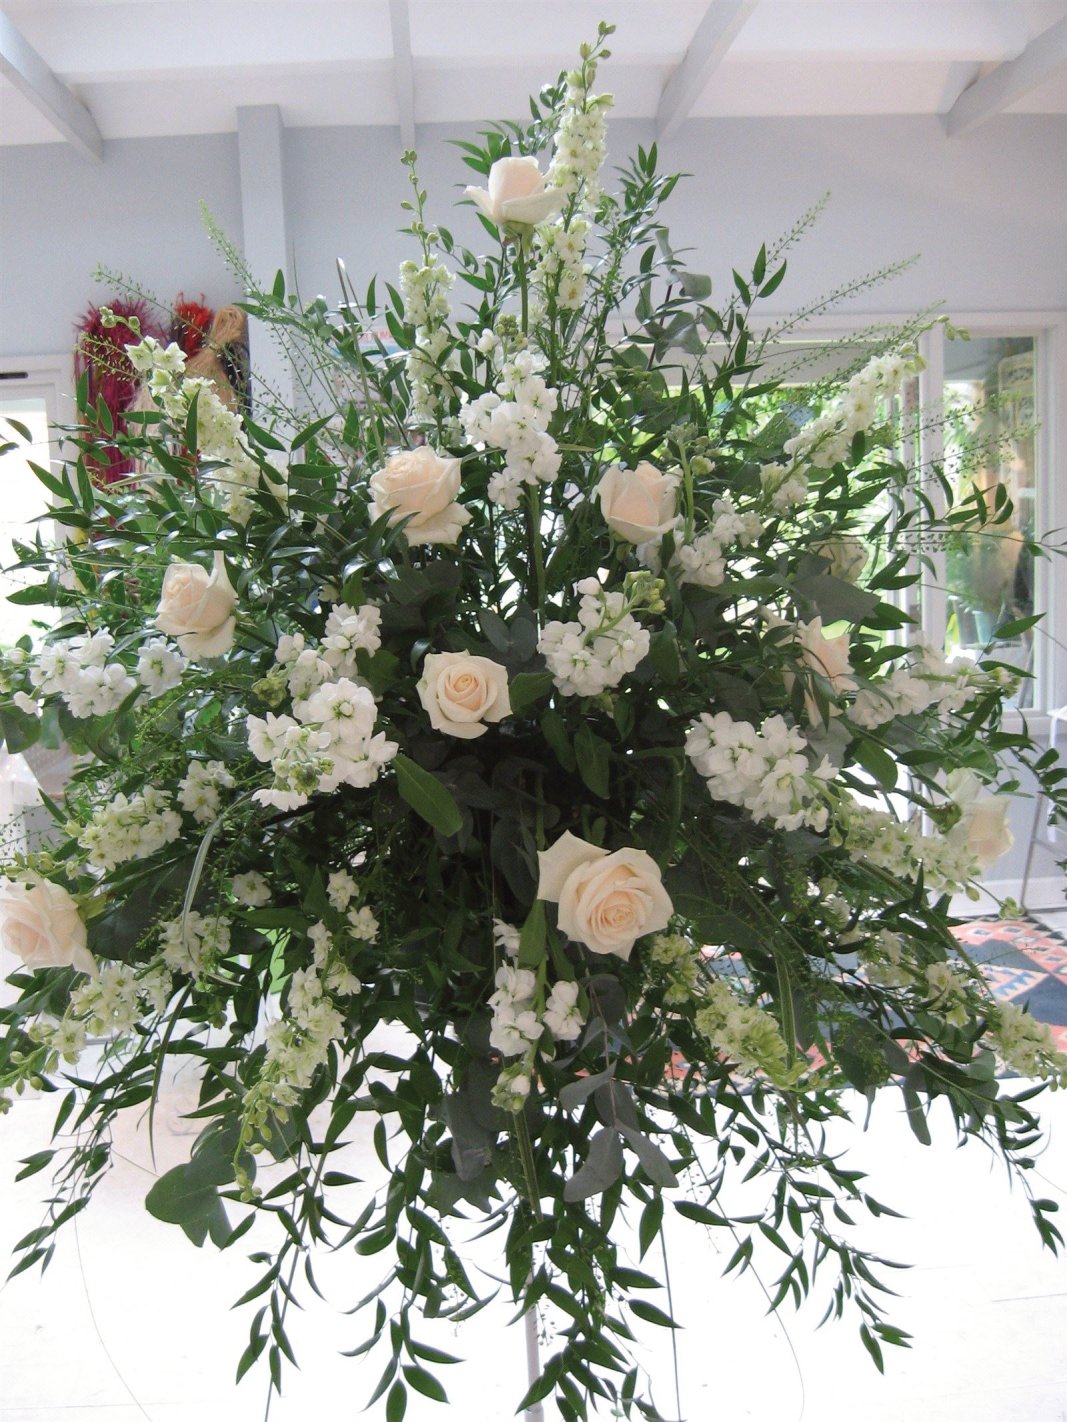 WEDDING FLOWERS KENT FLORIST USING VENDELA ROSE FOR PEDESTAL DISPLAY AT RECEPTION!